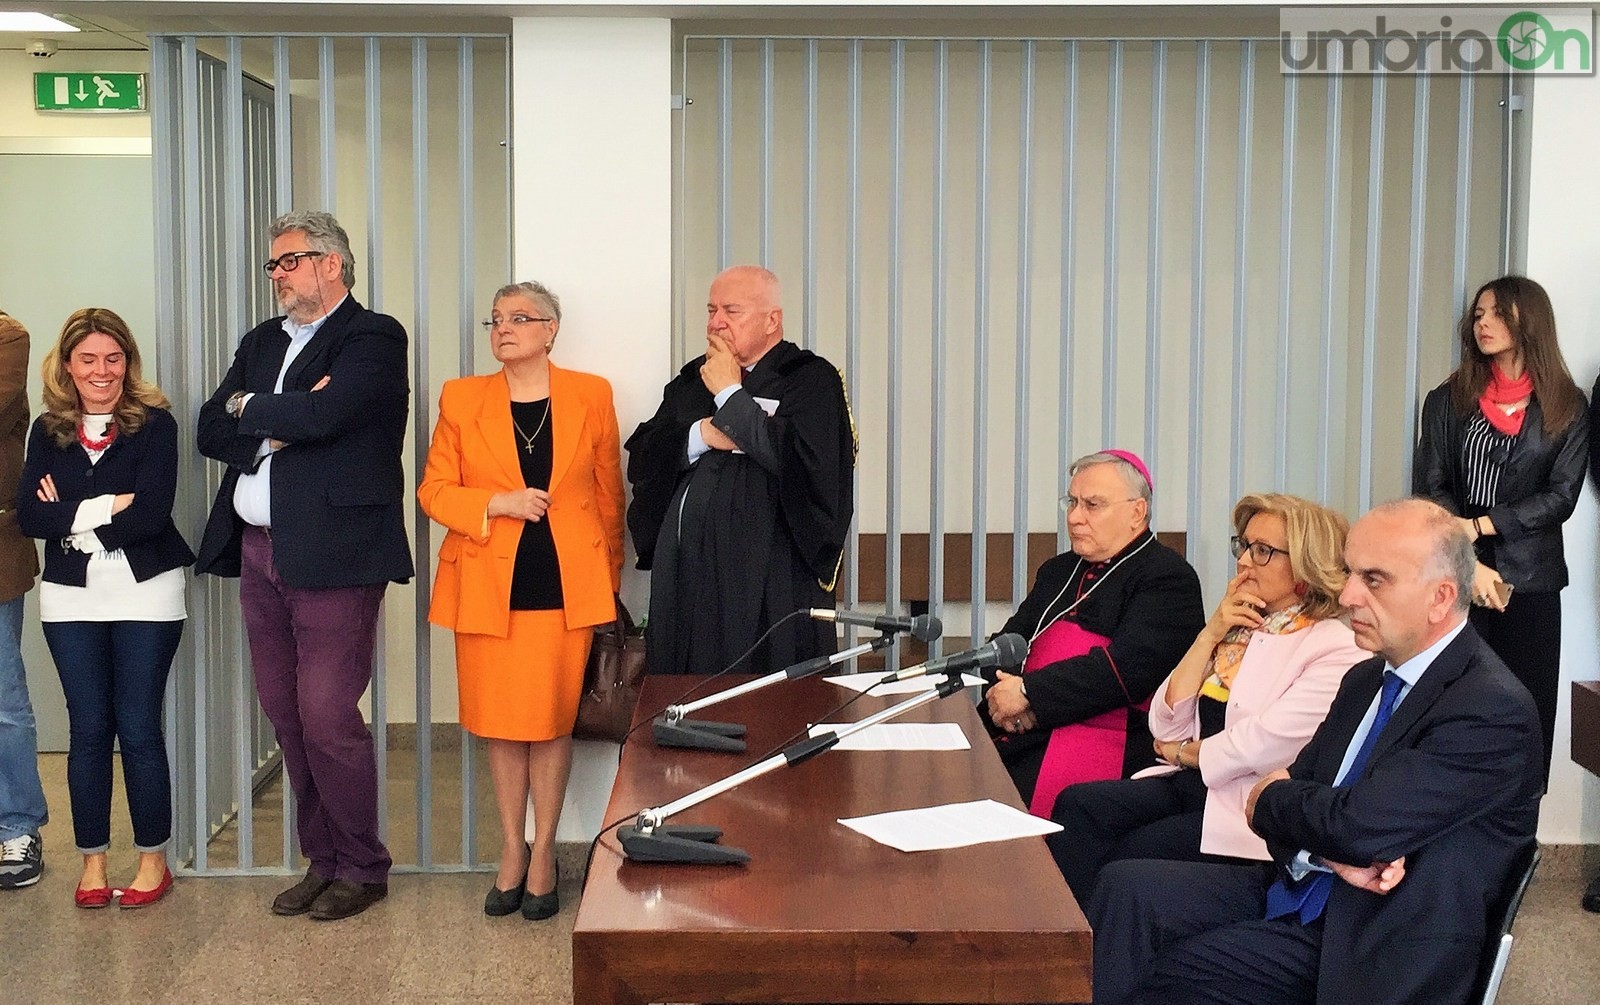 Insediamento nuovo procuratore Terni, Alberto Liguori, giuramento tribunale - 12 aprile 2016 (13)